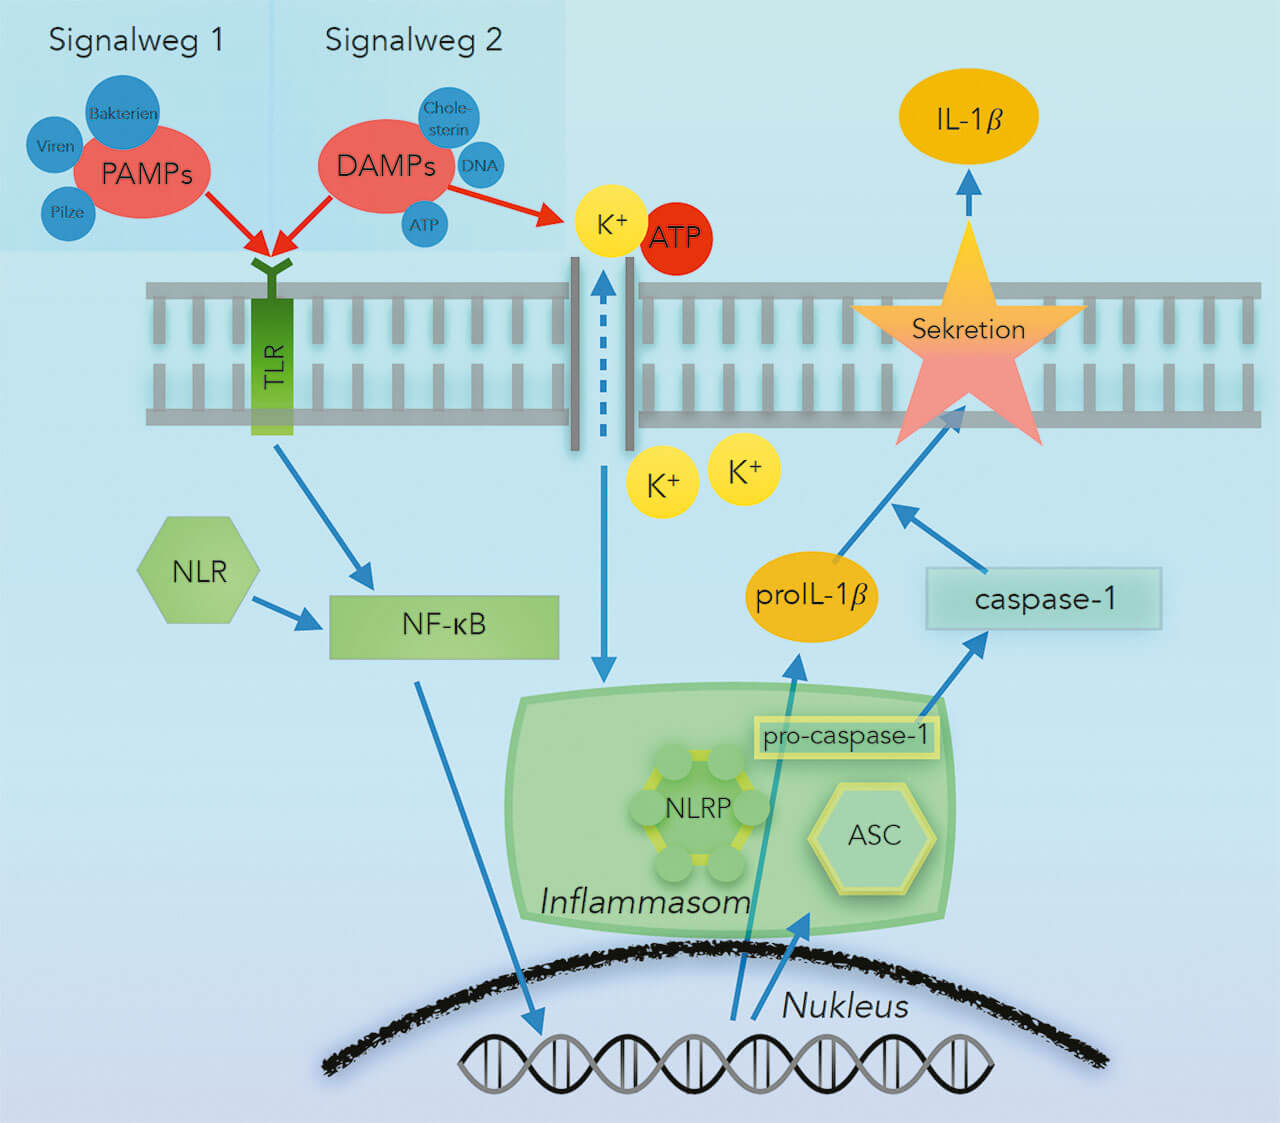 Abb. 2 Produktion von Interleukin-1β (IL-1β): Der Entzündungsprozess kommt durch verschiedene pathogenassoziierte molekulare Muster (PAMPs) oder gefahrassoziierte molekulare Muster (DAMPs) in Gang. Diese werden durch „Toll-like“ Rezeptoren (TLR) und „NOD-like“-Rezeptoren (NLR) detektiert. Extrazelluläres Adenosintriphosphat (ATP) führt zu einem Kaliumionen-Efflux (K+). Durch diese Signale werden über den „Nuclear factor kappa B“ (NF-κB) im Nukleus die Produktion von proinflammatorischen Vorläuferzytokinen (proIL-1β) und der Aufbau eines Inflammasoms angeregt. Das Inflammasom kann über die aktivierte Caspase-1 proIL-1β in biologisch aktives IL-1β umwandeln. IL-1β wird aus der Zelle freigesetzt und führt zu einer Immunreaktion. (Quelle: Modifiziert nach Shibata13.). ASC: „Apoptosis-associated speck-like protein containing a caspase-recruitment domain“.